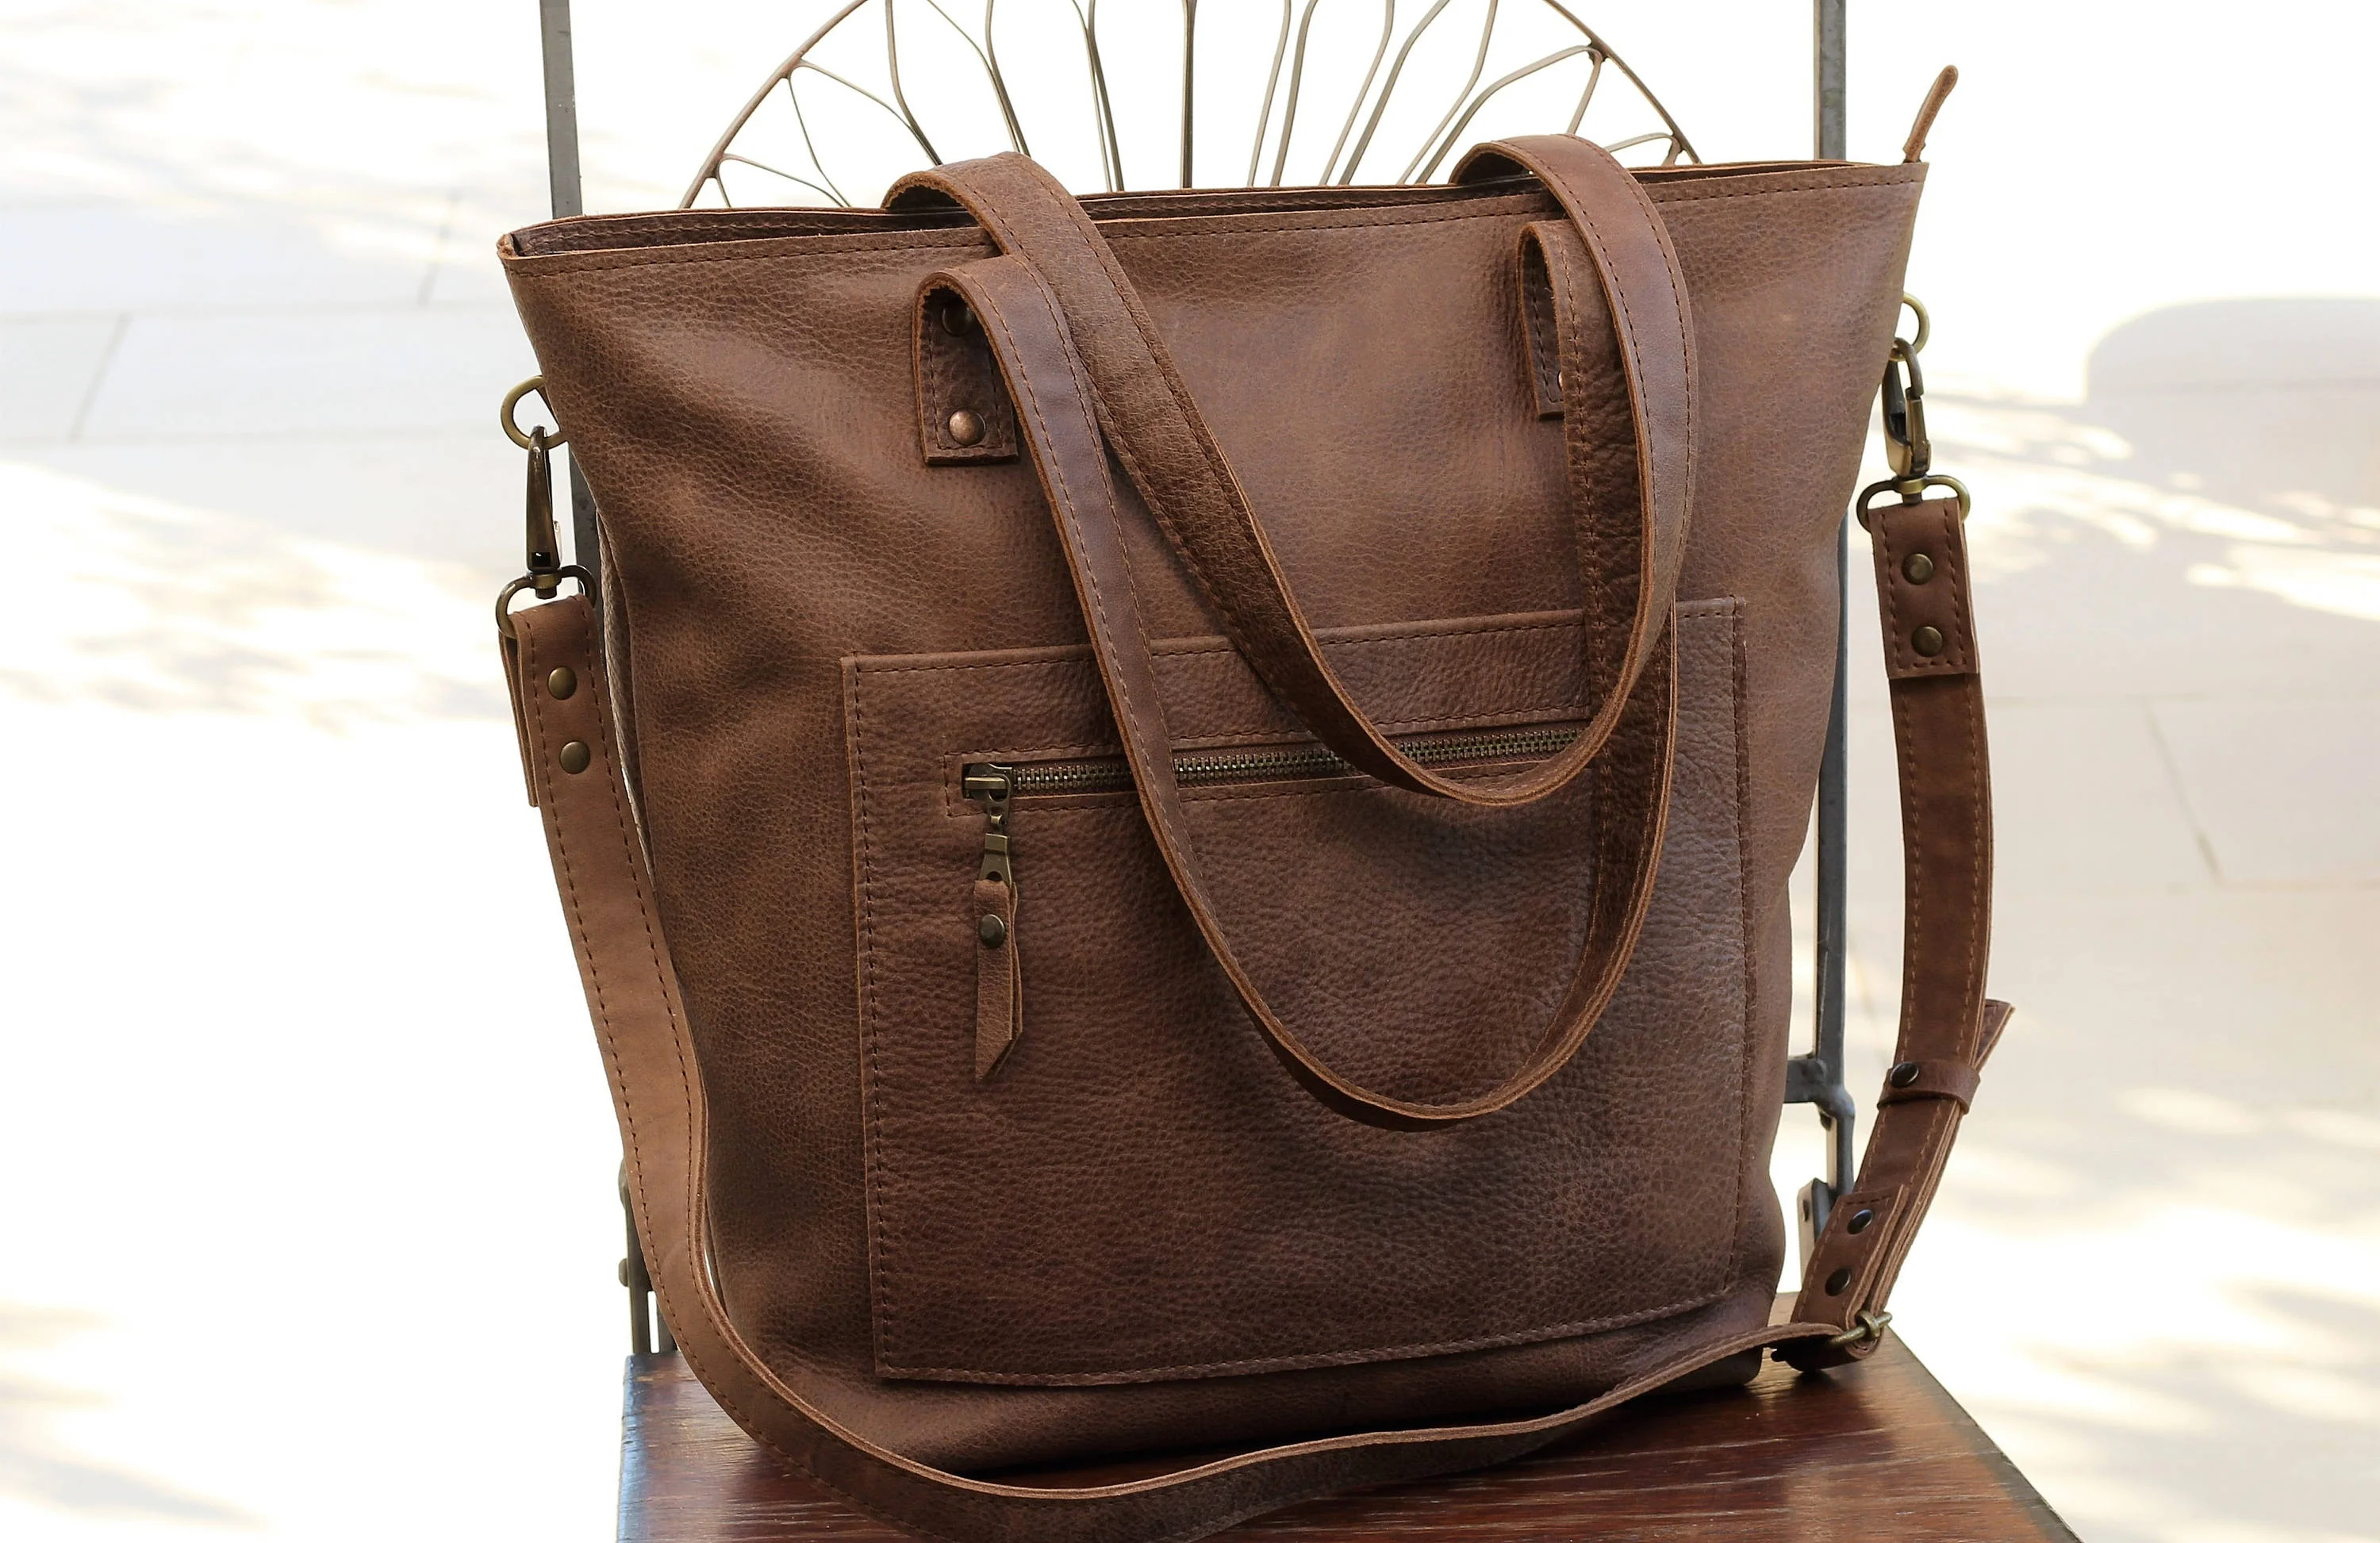 Leather Tote Bag Custom Tote Bags Women Laptop Bag Designer 